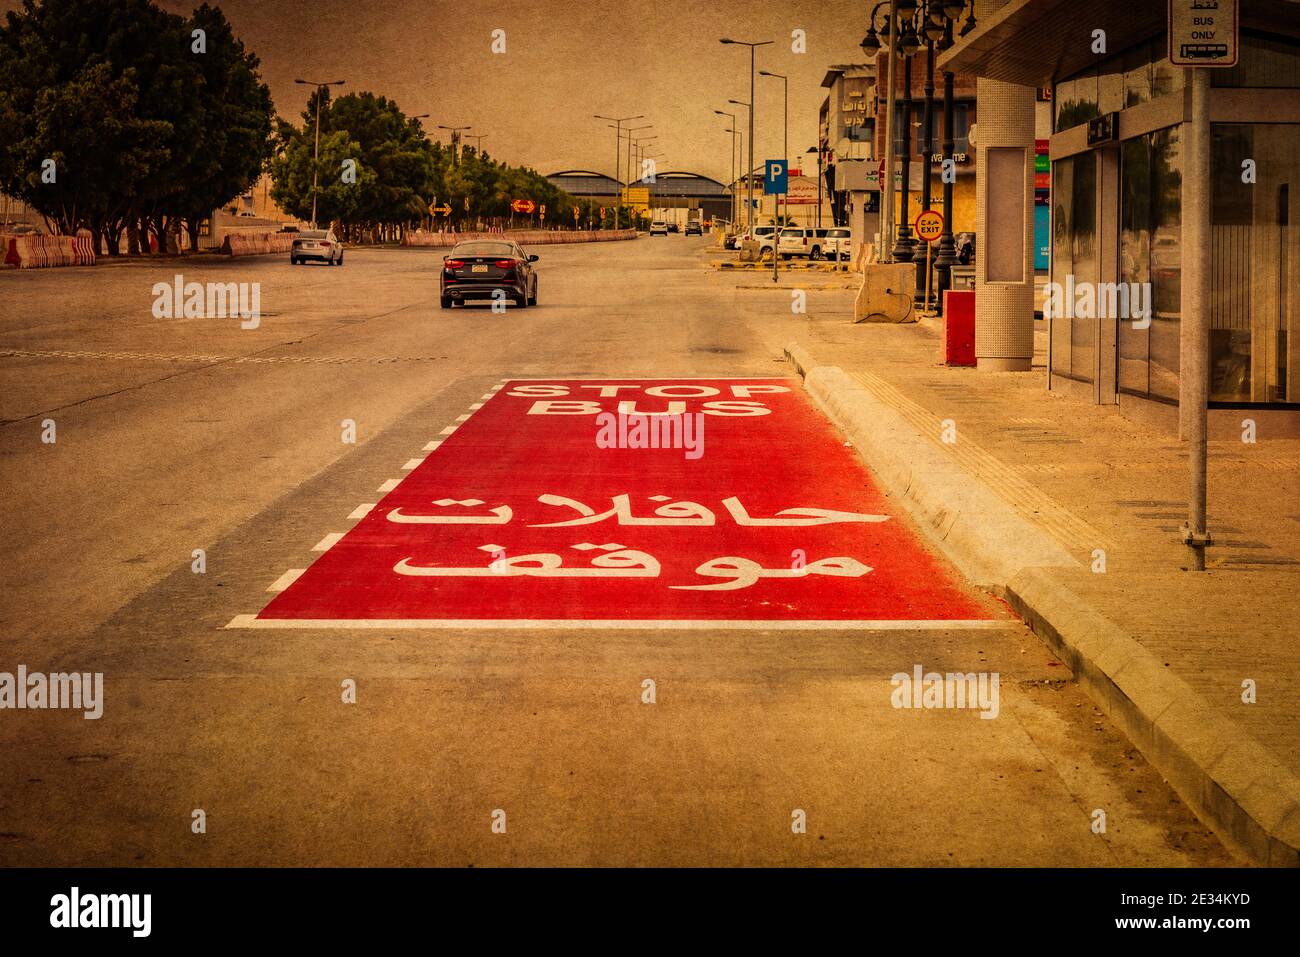 Bus Stop in Riyadh Stock Photo